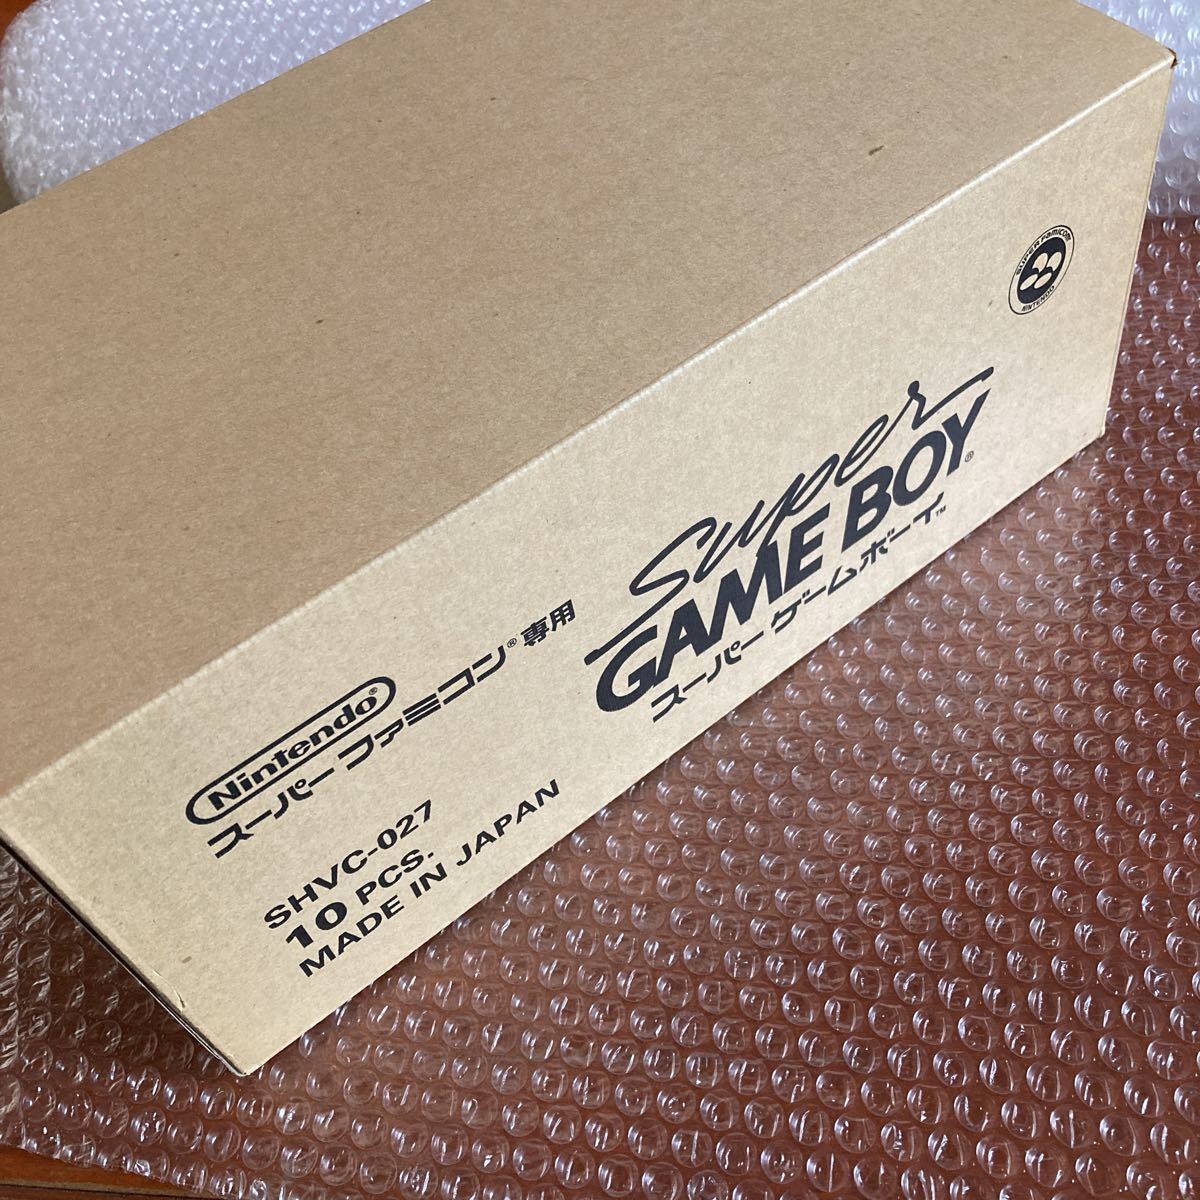  последний не использовался [10pcs]Nintendo перевозка с коробкой картон с коробкой Super Famicom специальный sfc SFC super Game Boy Hsu fami